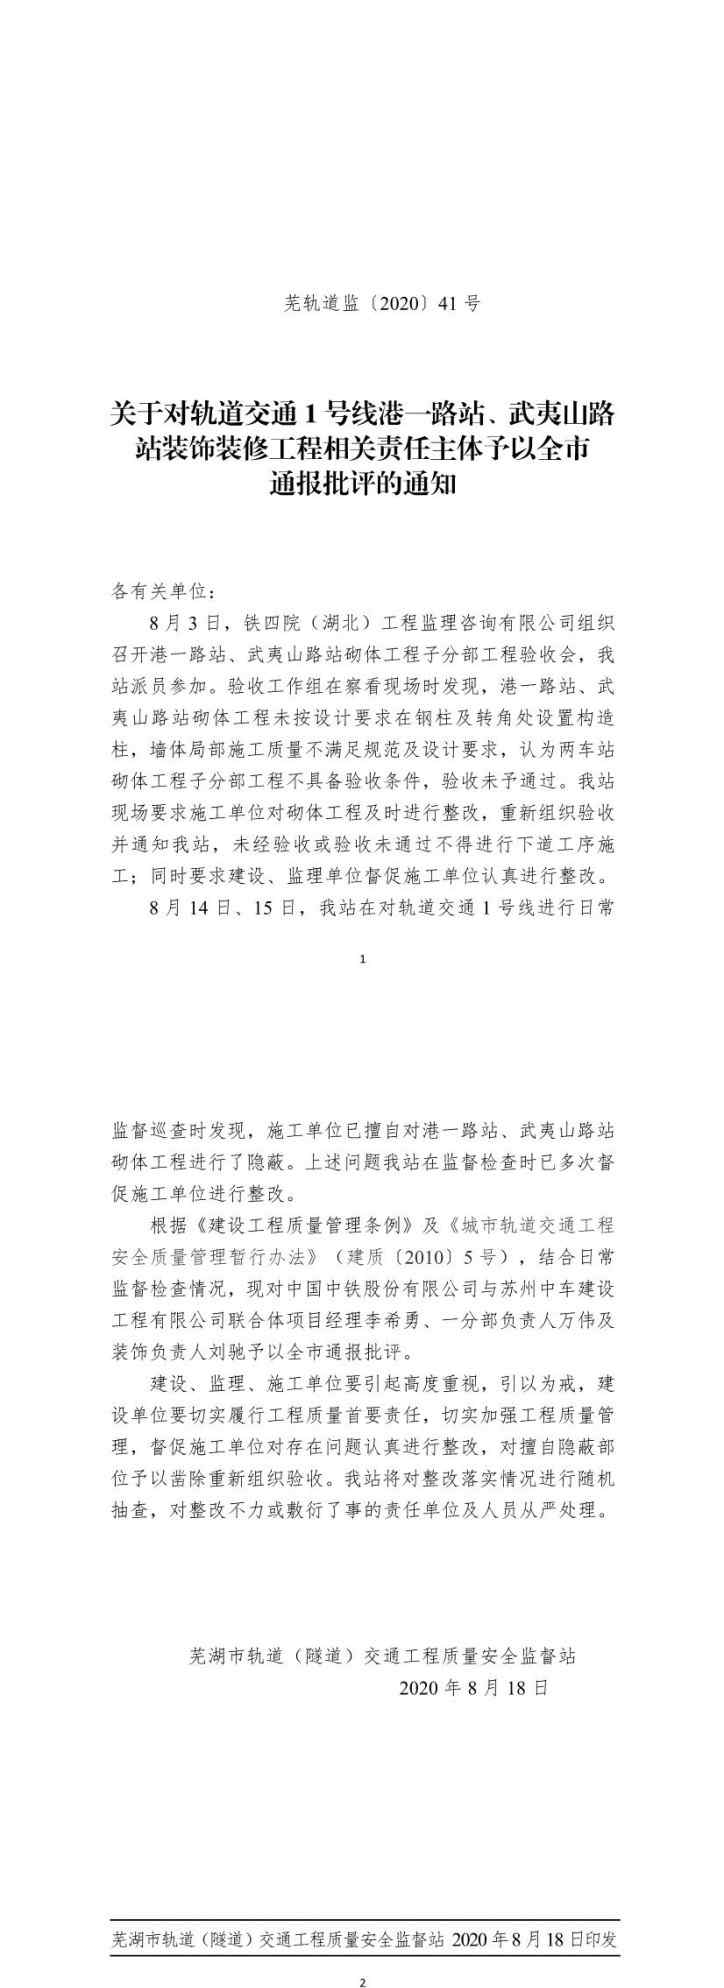 苏州轨道交通1号线 芜湖地铁1号线一工程被通报 中国中铁与苏州中车建设工程公司相关责任人被通报批评